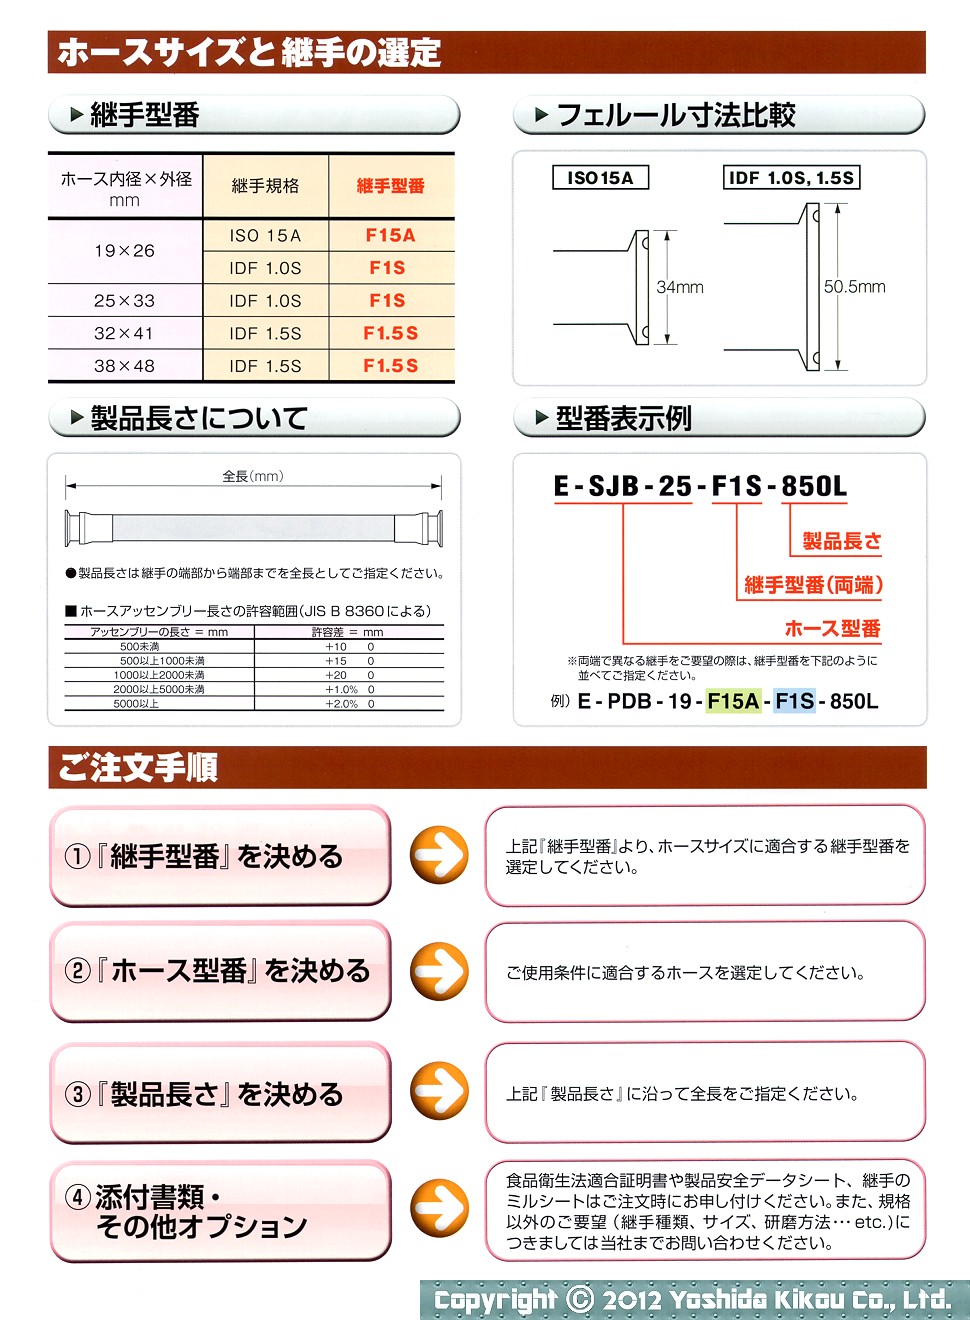 楽天市場 八興販売 HKH スーパー柔軟フッ素ホース 補強糸入りタイプ 20m E-SJB-19